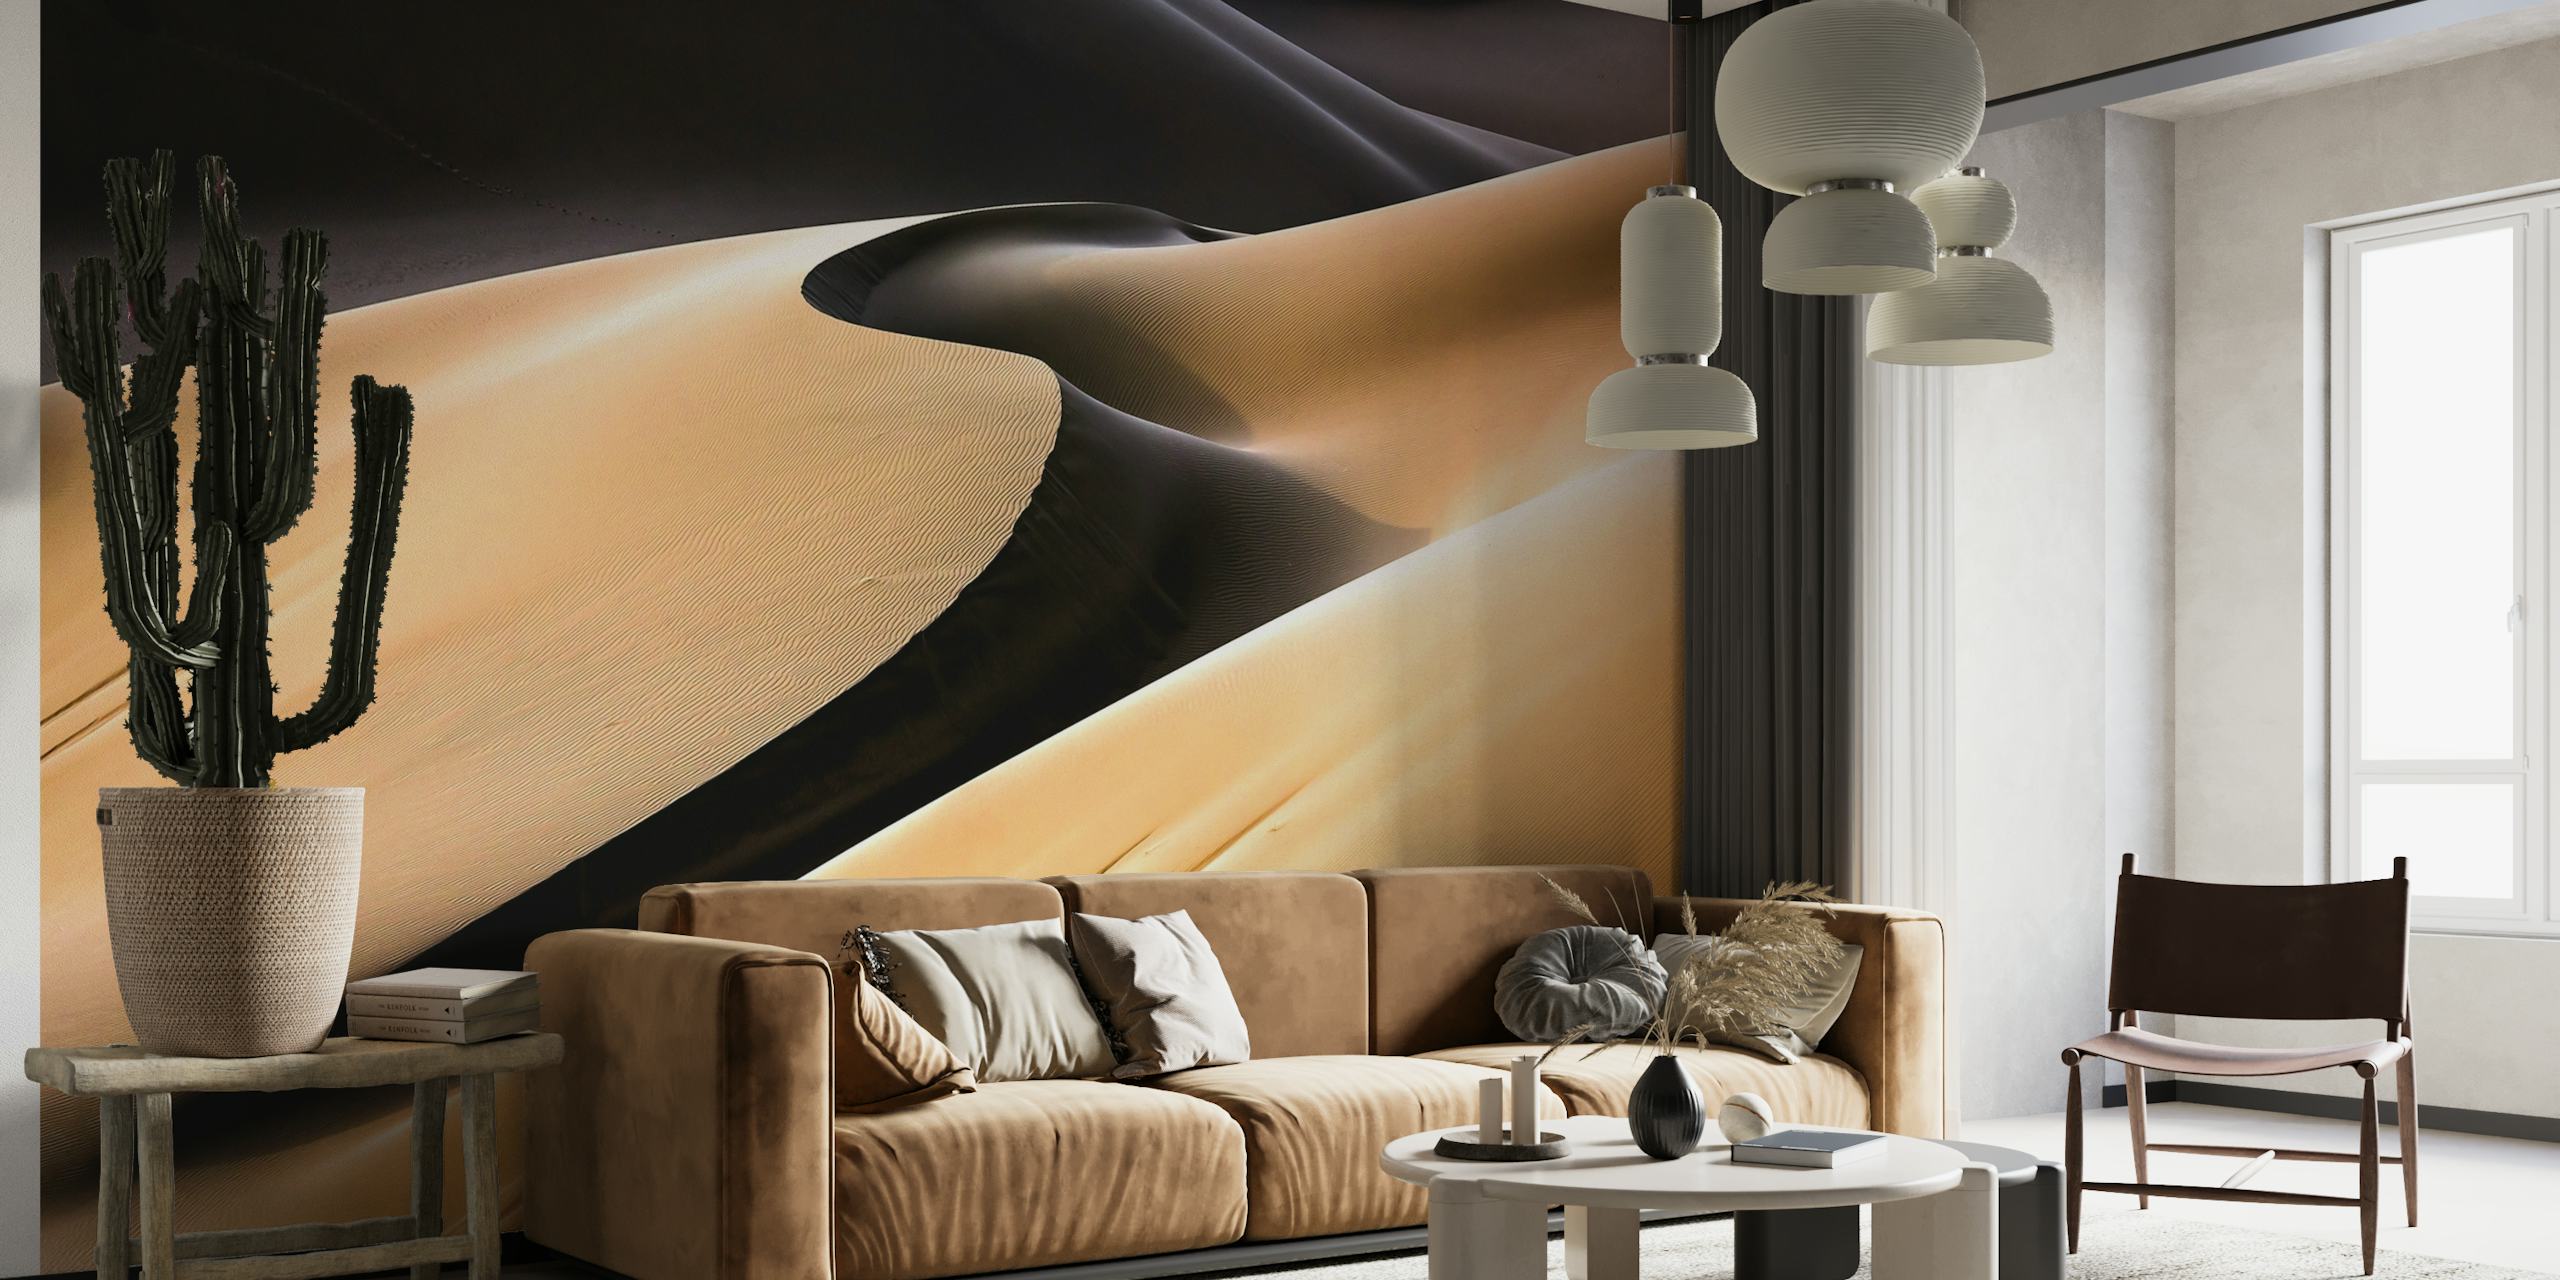 Abstrakcyjna fototapeta z pustynnymi wydmami, przedstawiająca światło i cień